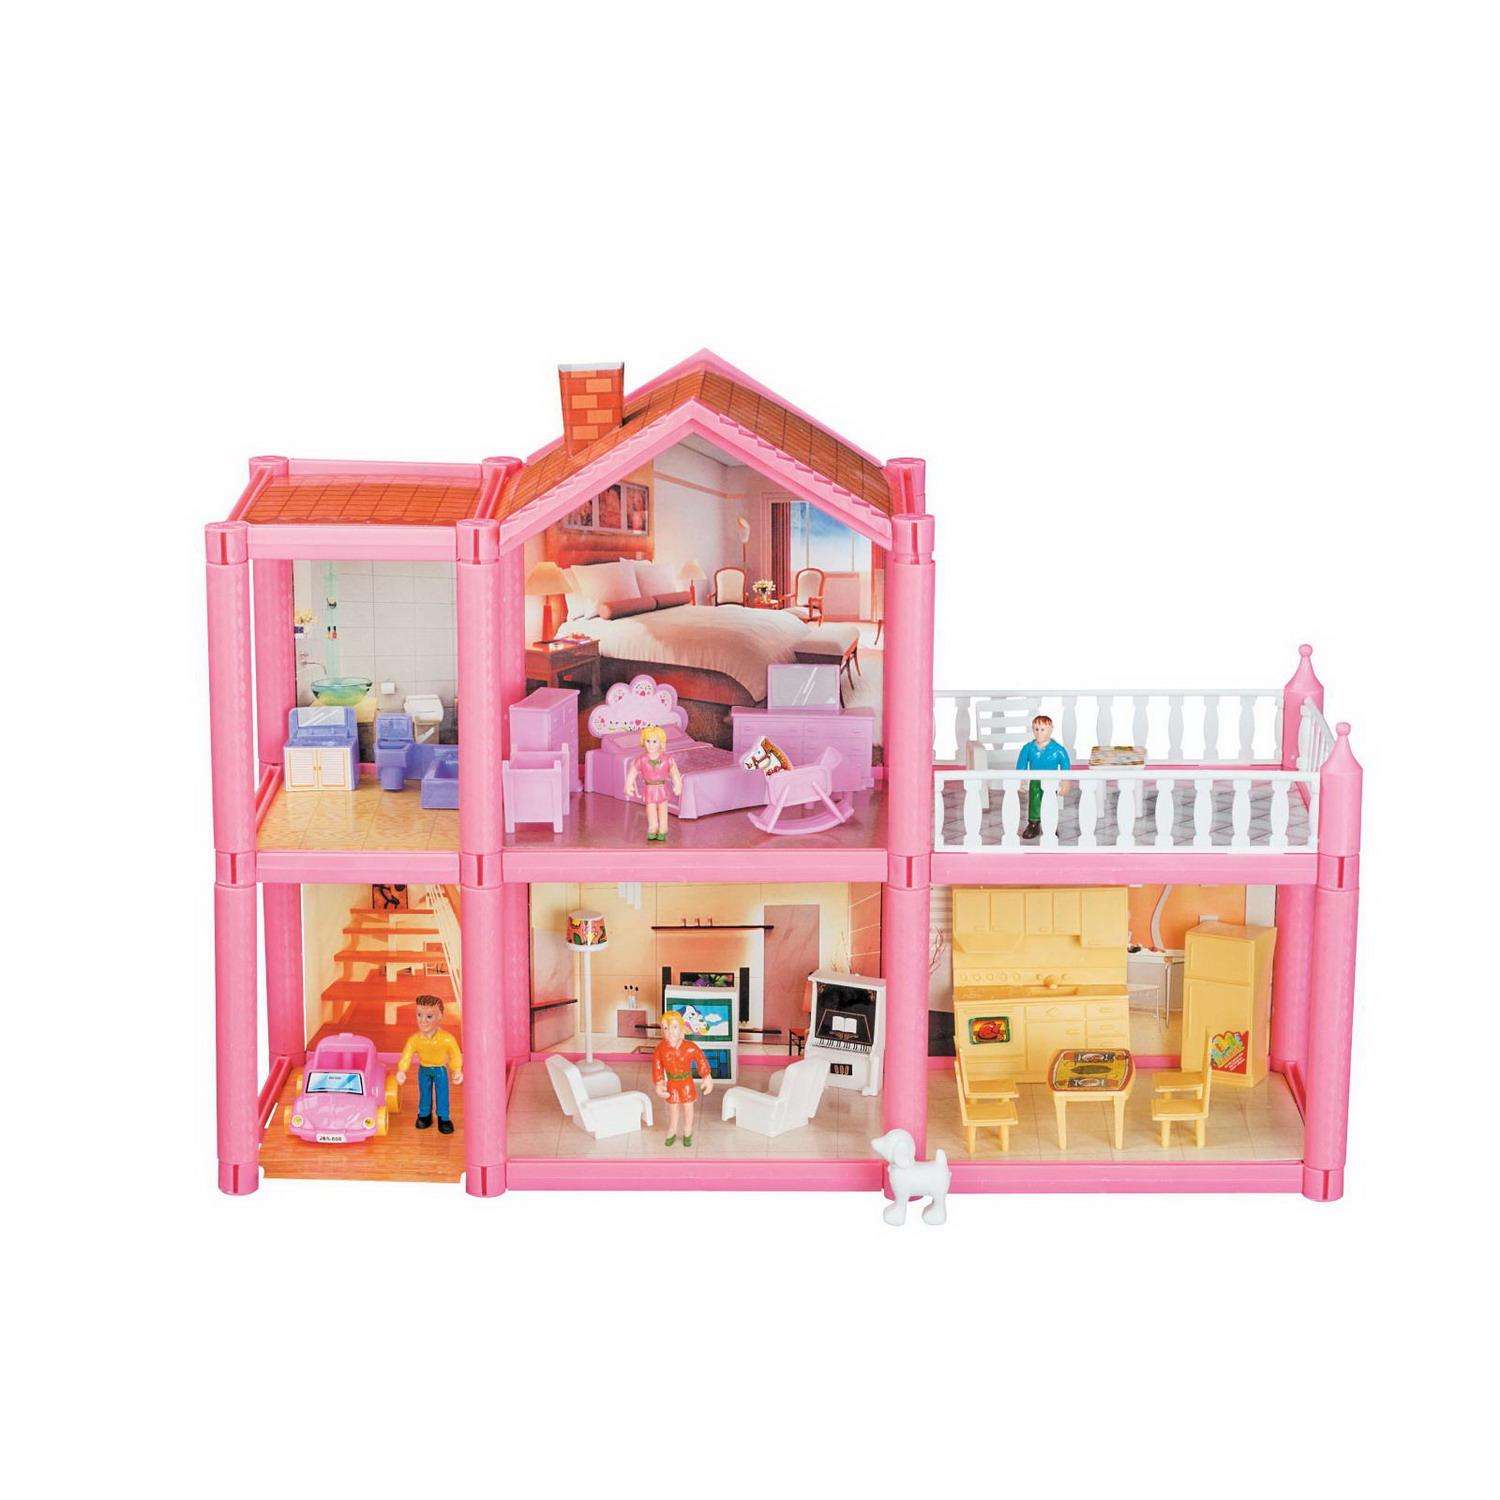 Игровой набор В гостях у куклы ABtoys Кукольный дом с мебелью и человечками 113 деталей PT-01549 - фото 3